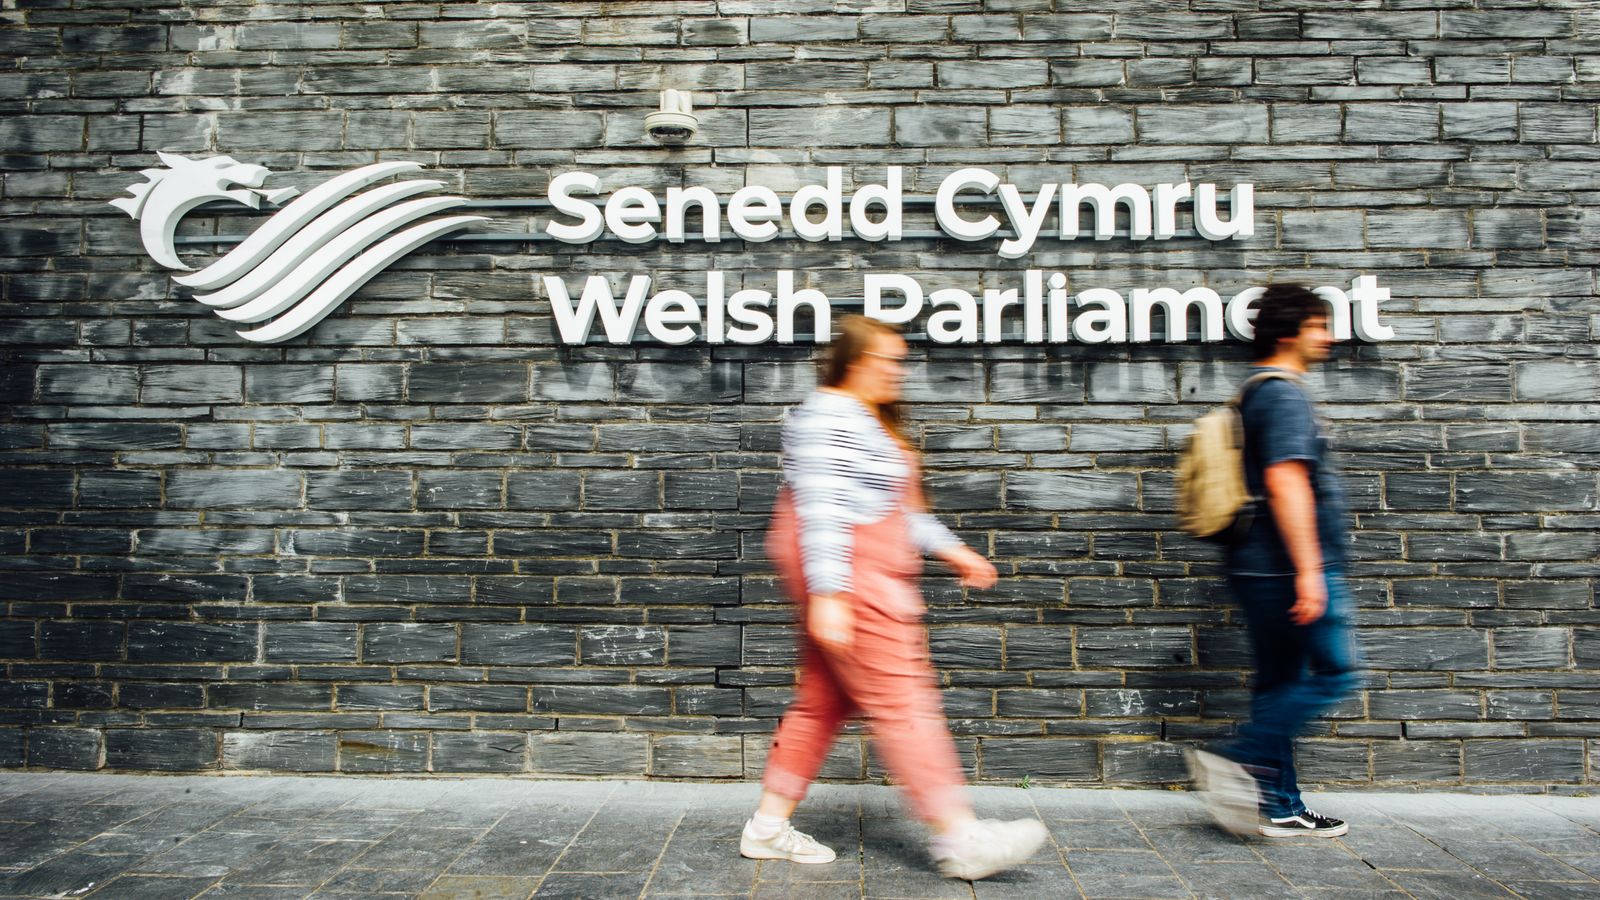 `Резерви` относно новата система за гласуване в Уелс след предупреждение за `недемократично`